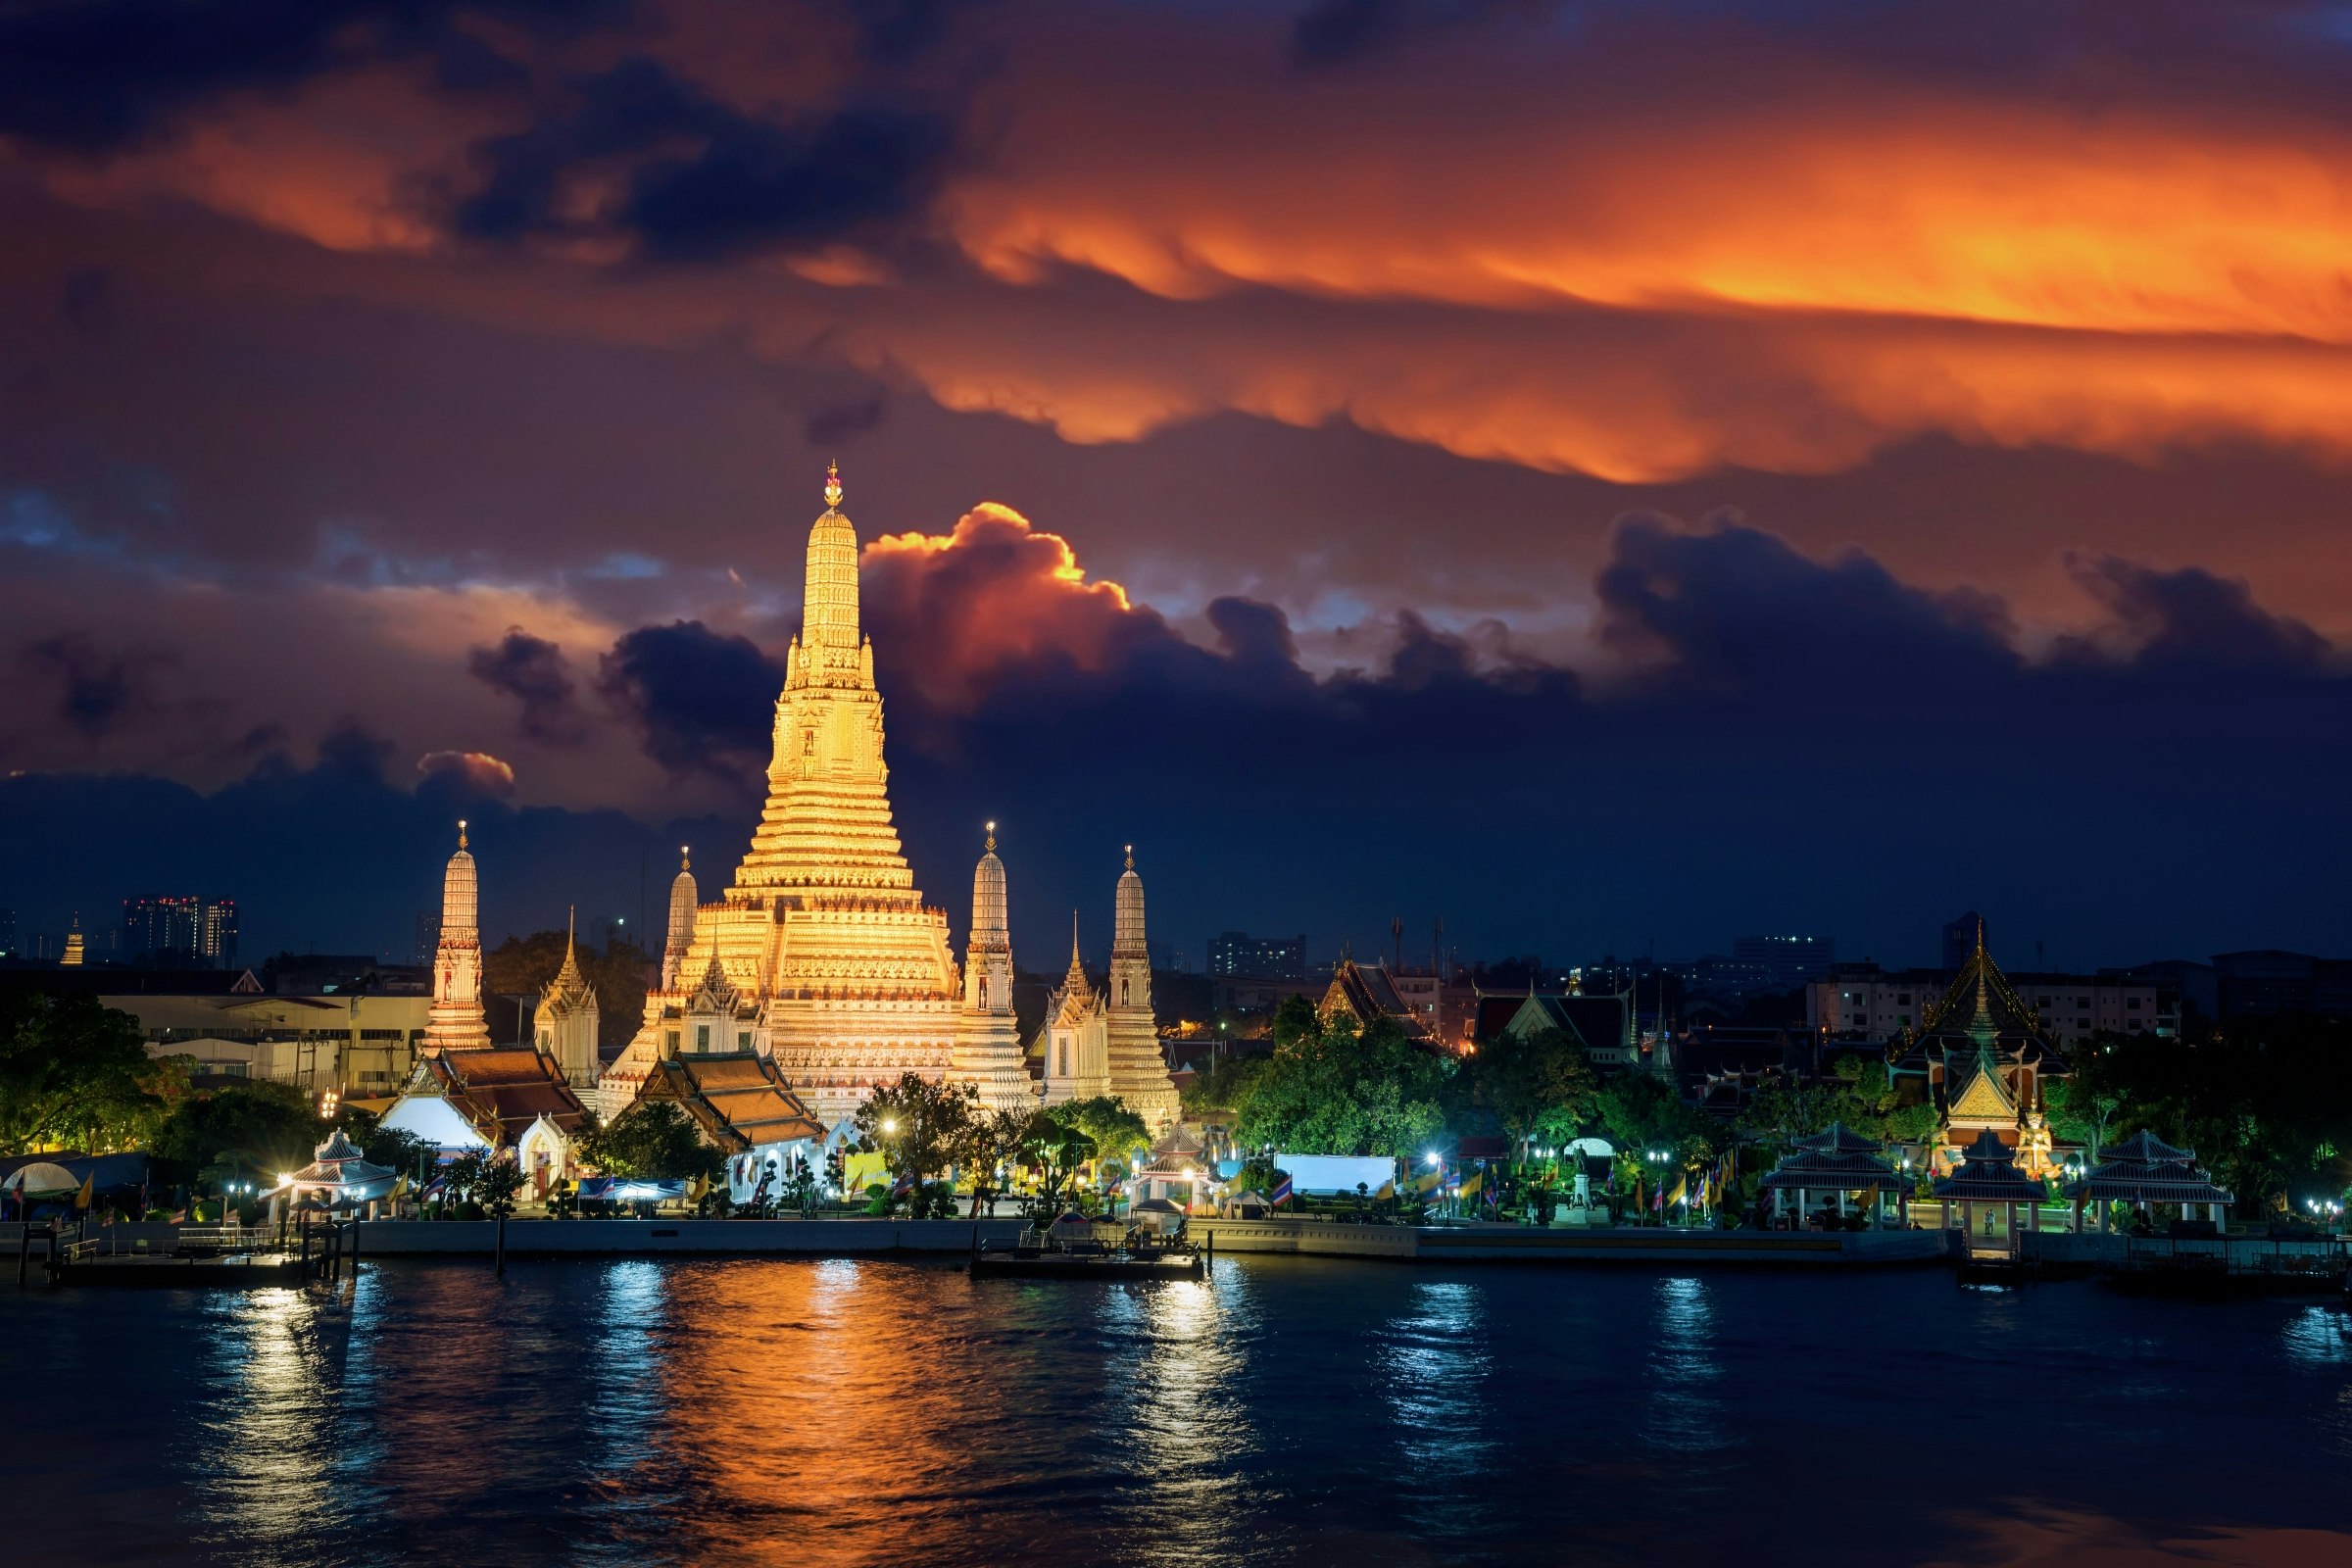 Wat Arun temple in Bangkok during sunset